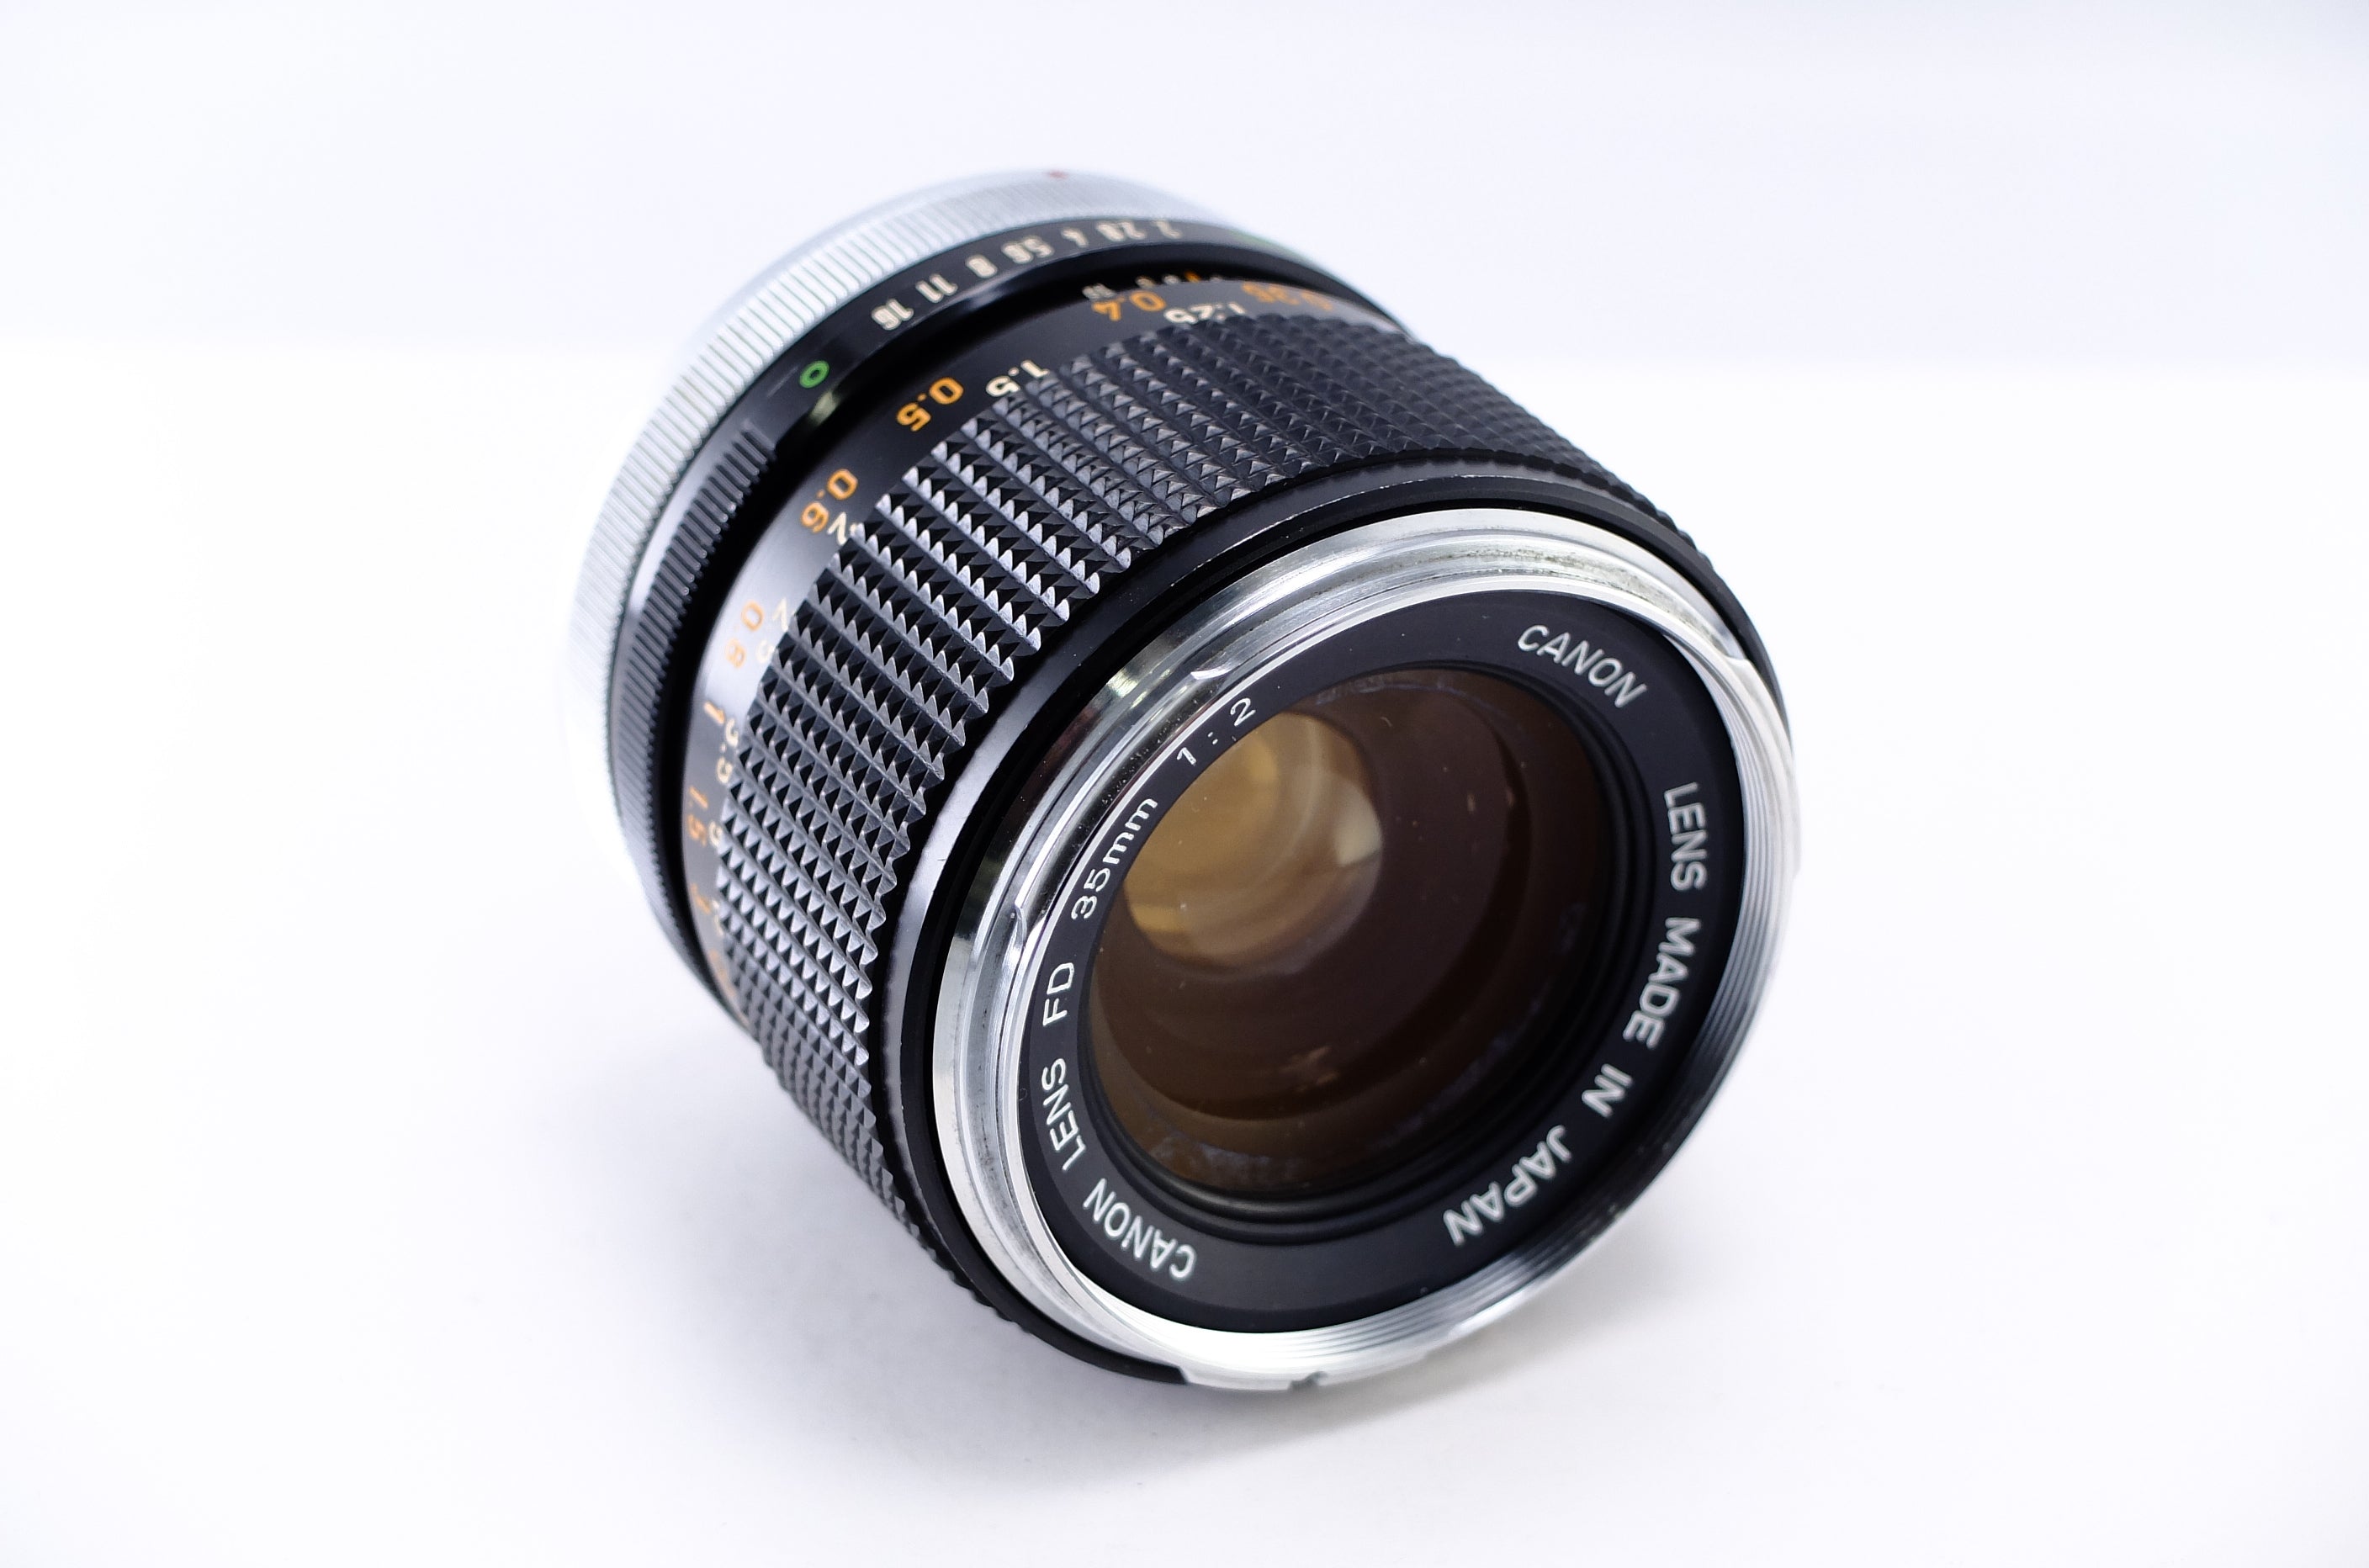 Canon】FD 35mm F2 初期型 〇マーク 凹レンズ [キヤノンFDマウント 